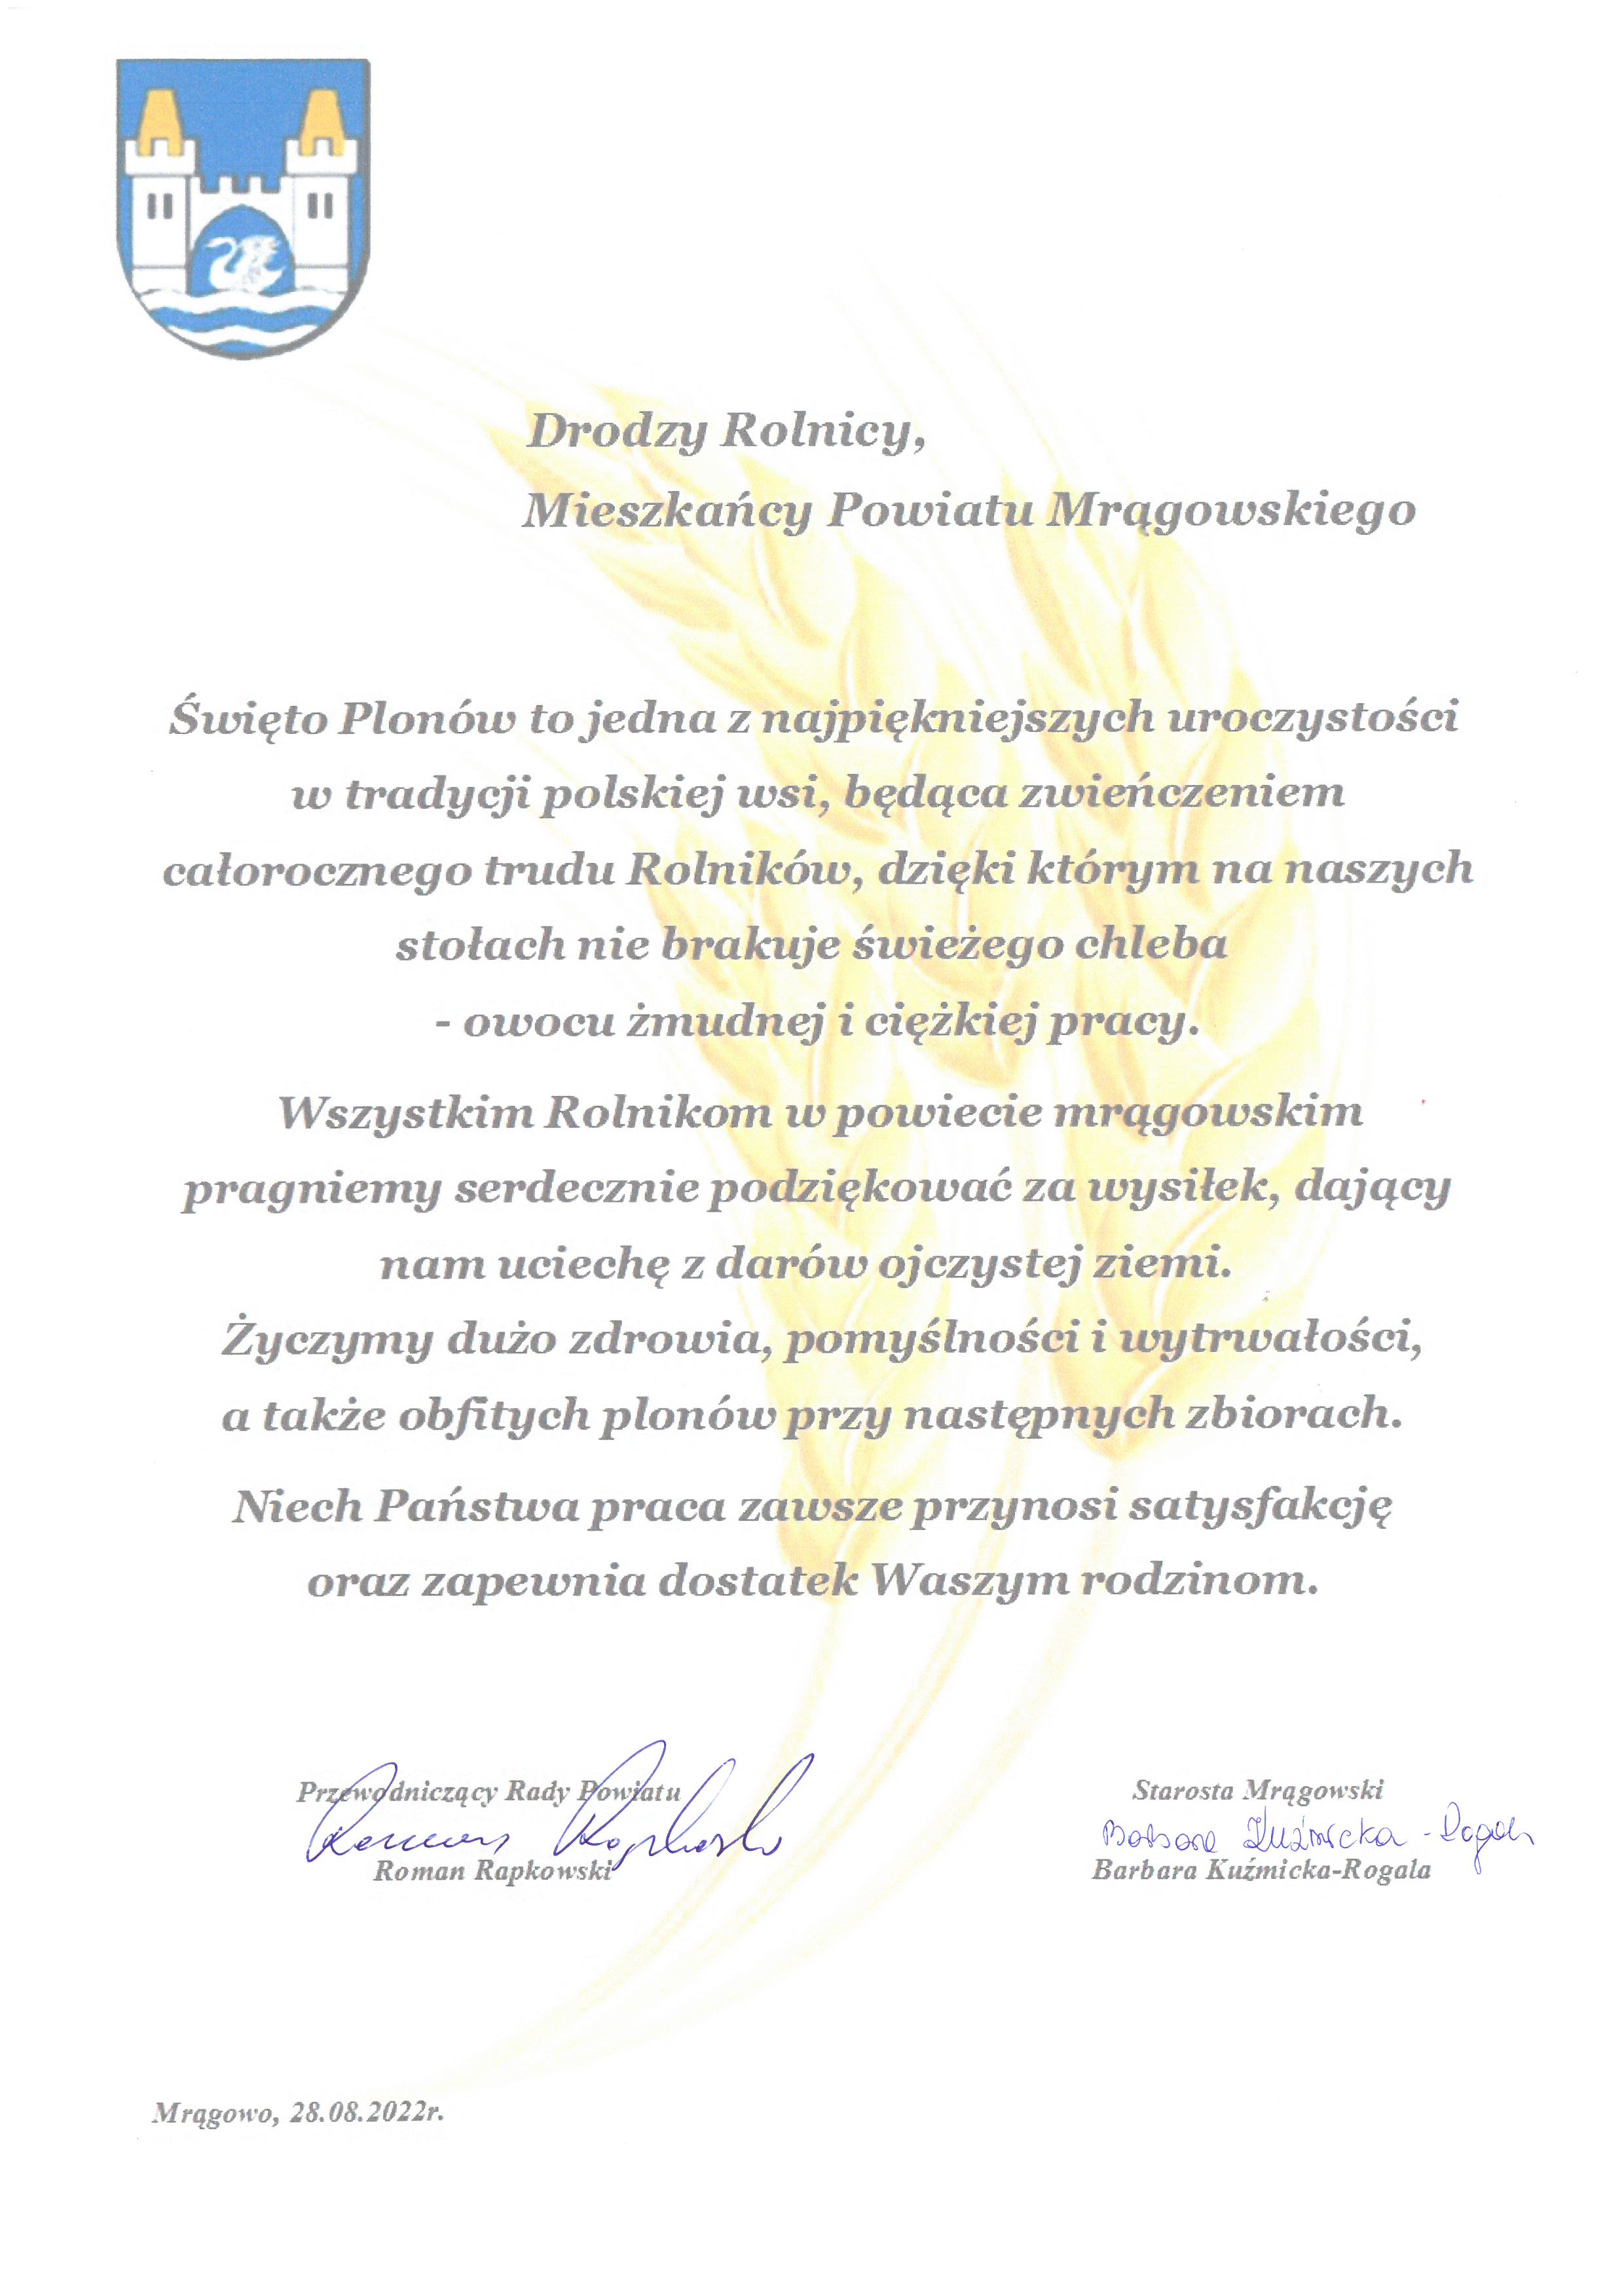 Życzenia z okazji Święta Plonów, przypadające na 28 sierpnia od Starosty Mrągowskiego – Barbary Kuźmickiej-Rogala i Przewodniczącego Rady Powiatu – Romana Rapkowskiego